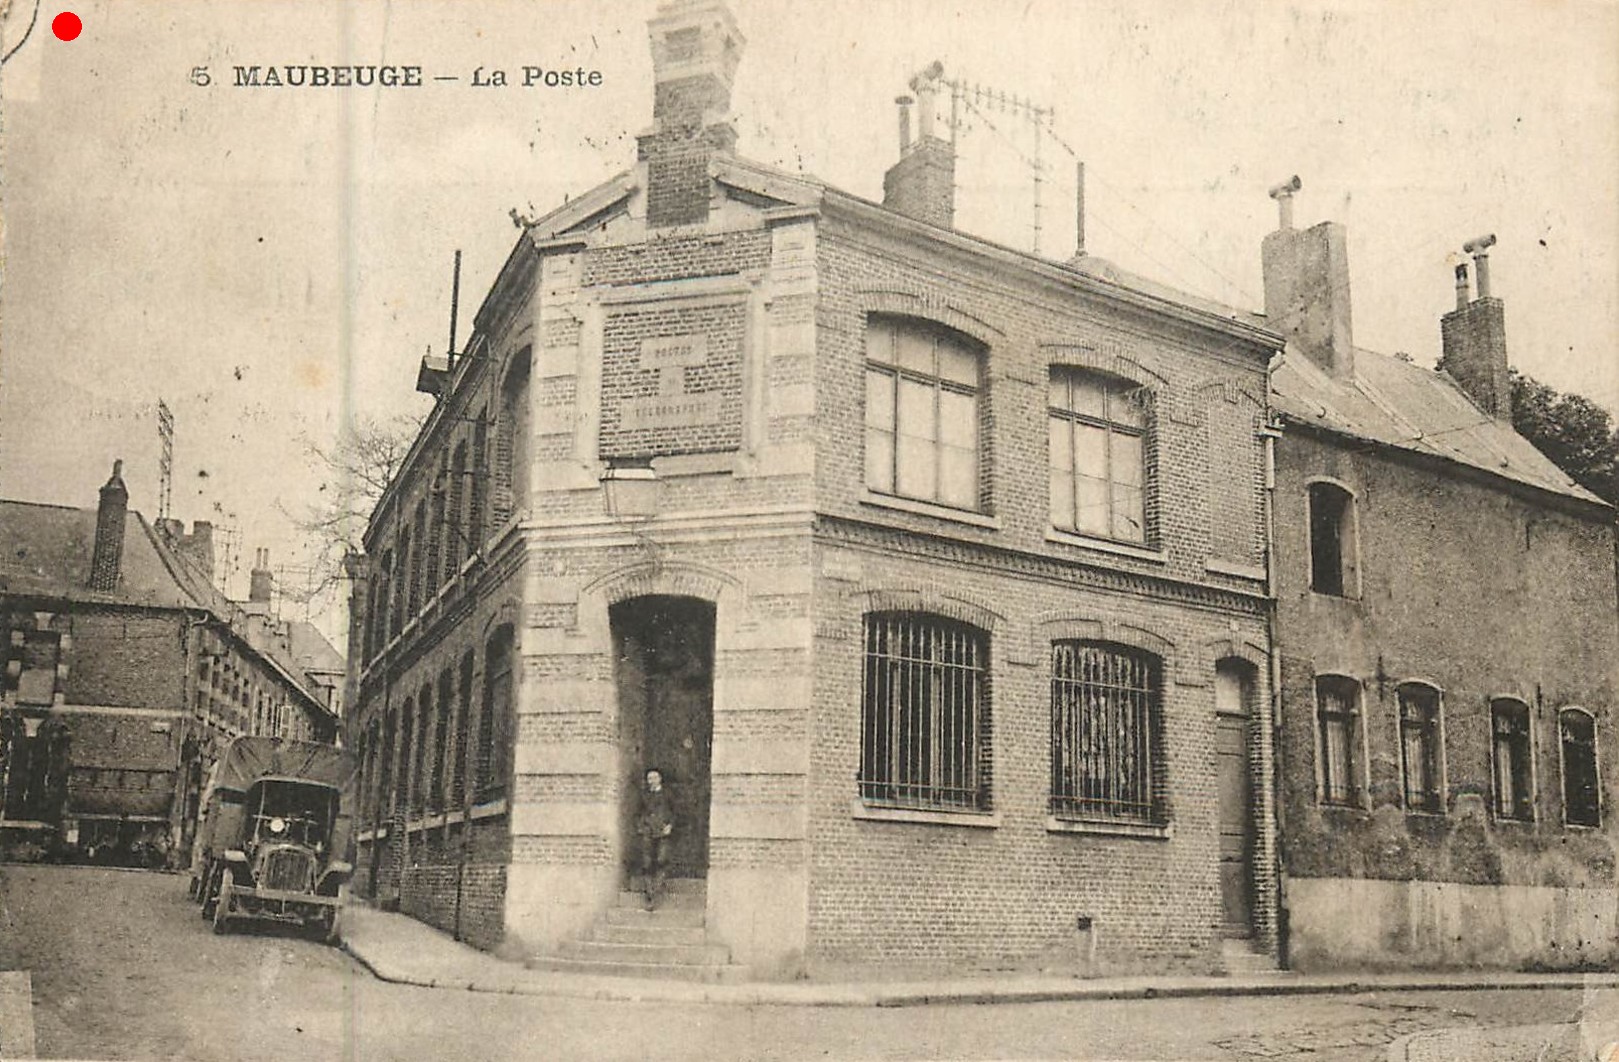 Cartes postales anciennes de Maubeuge, salle Sthrau, Collège, Banque de France, La Poste